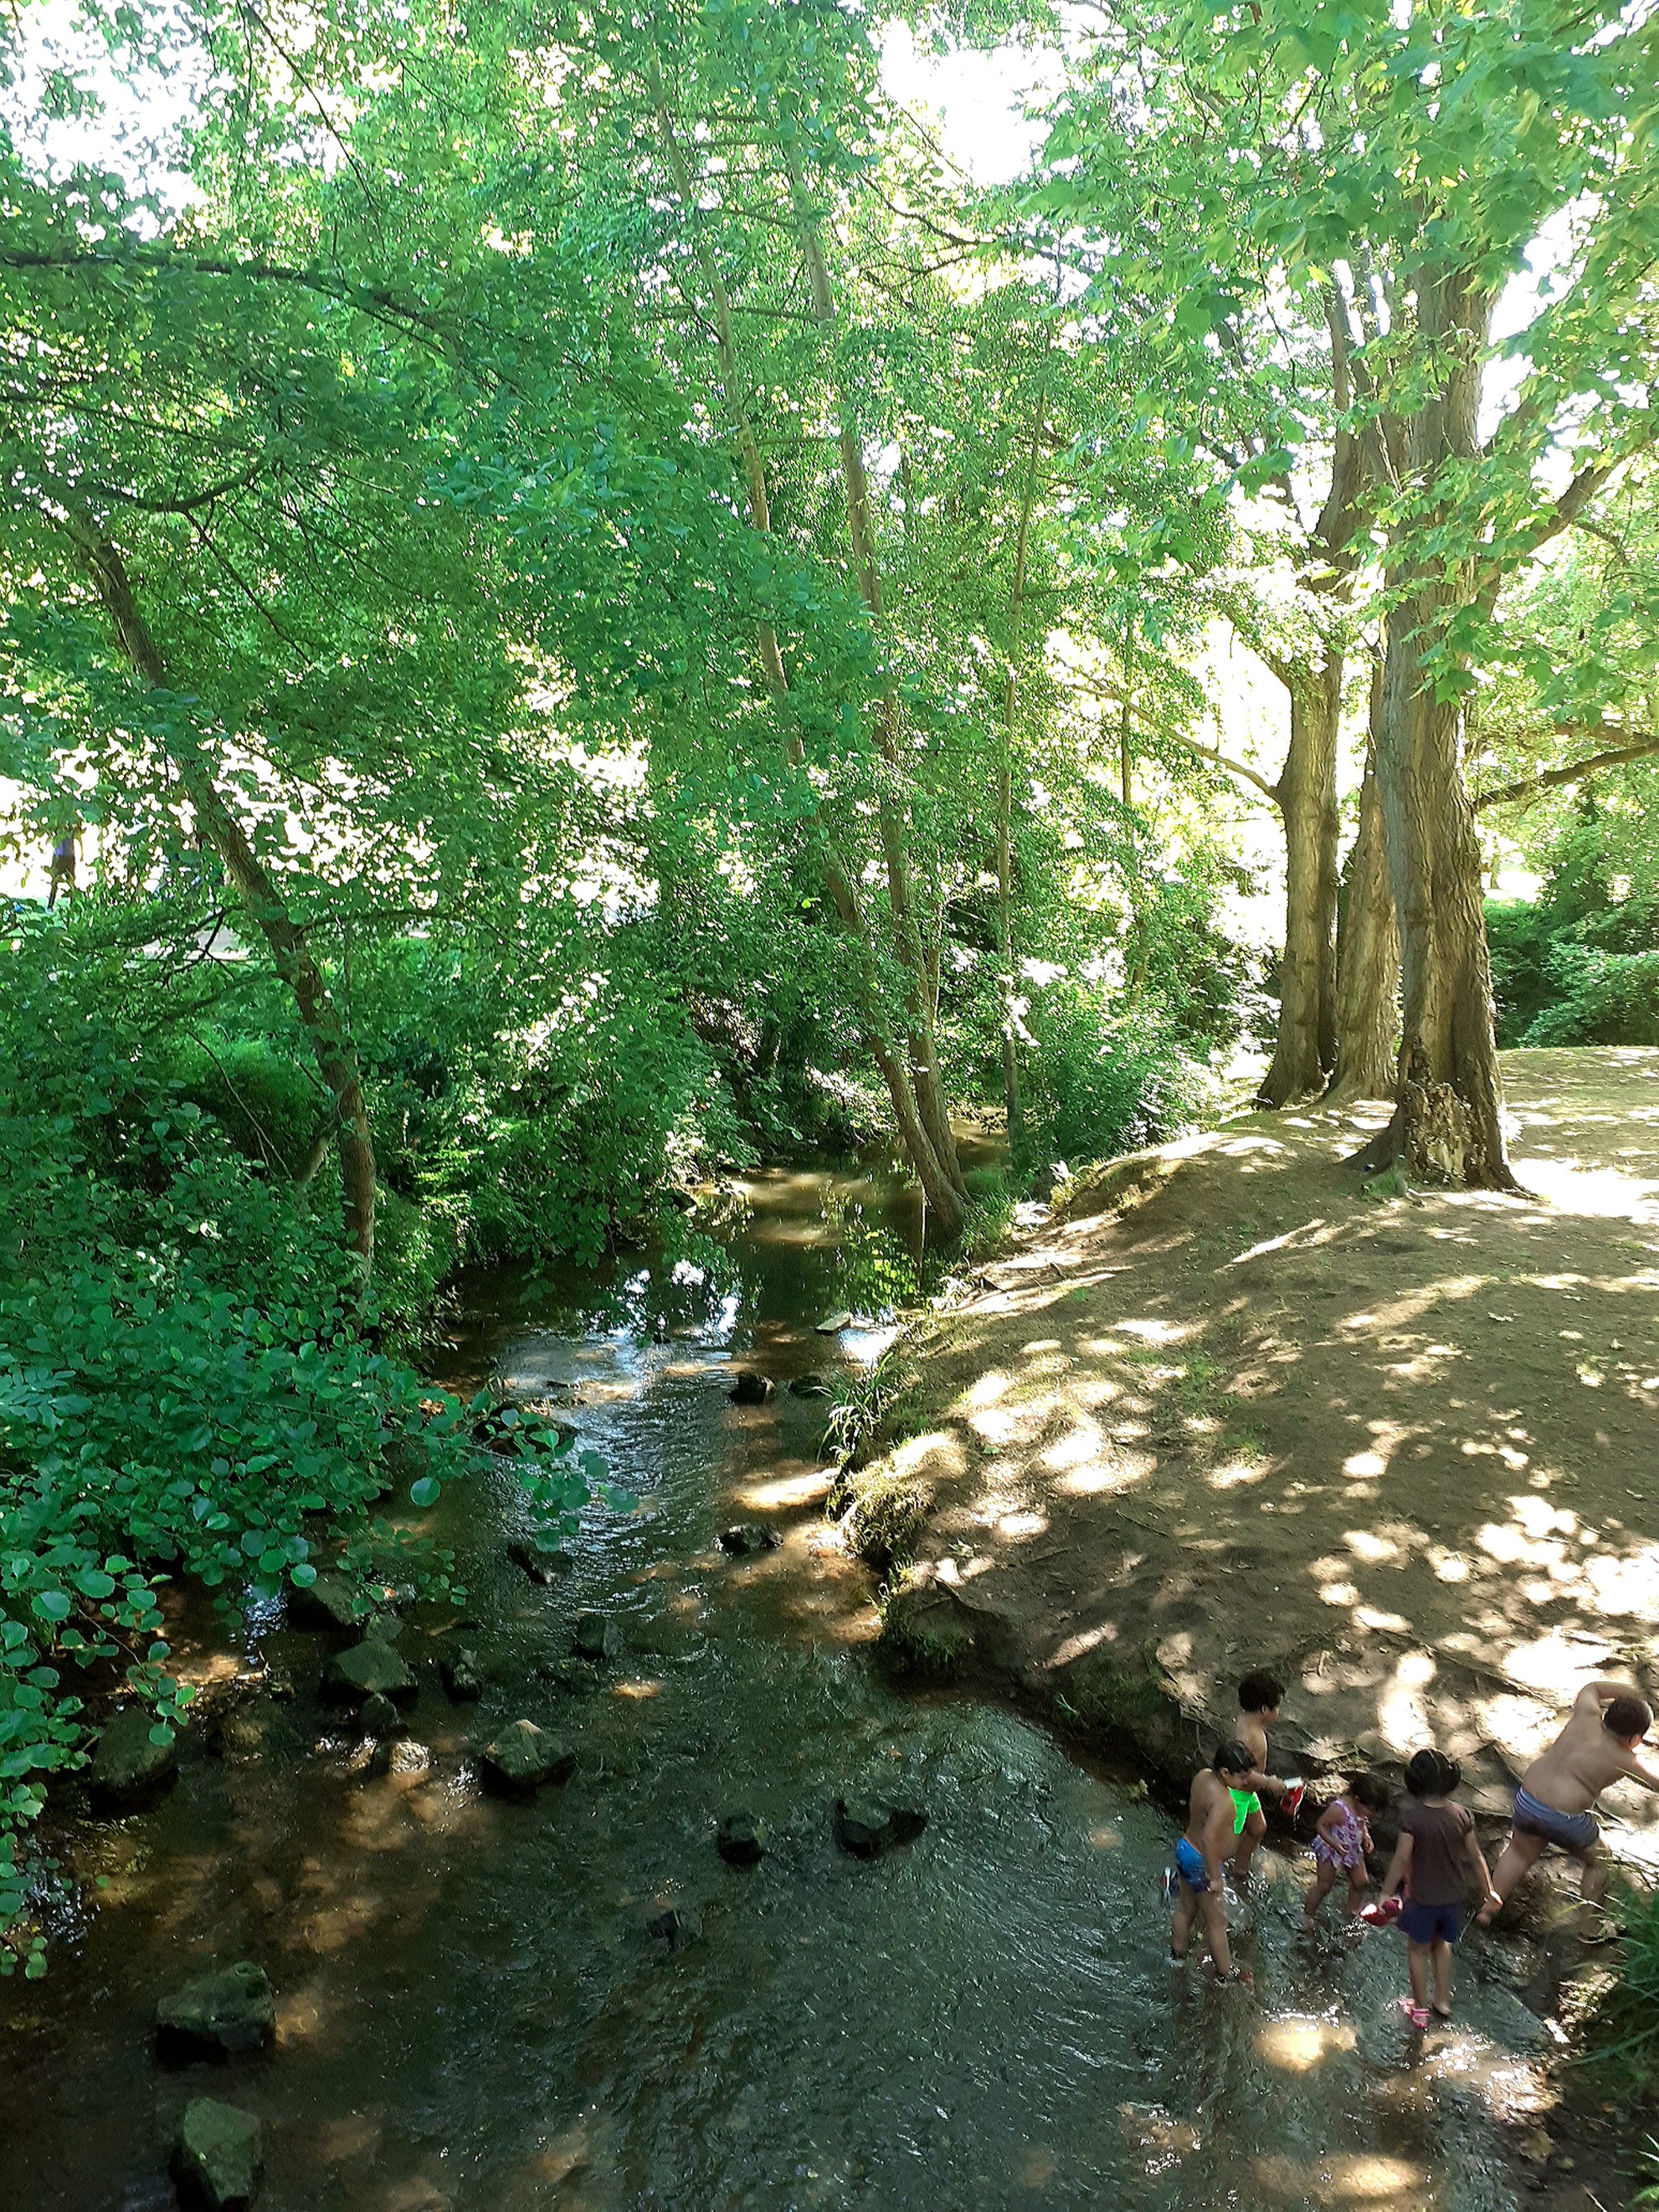 River Nature Forest Landscapes Creek Image By Inguma